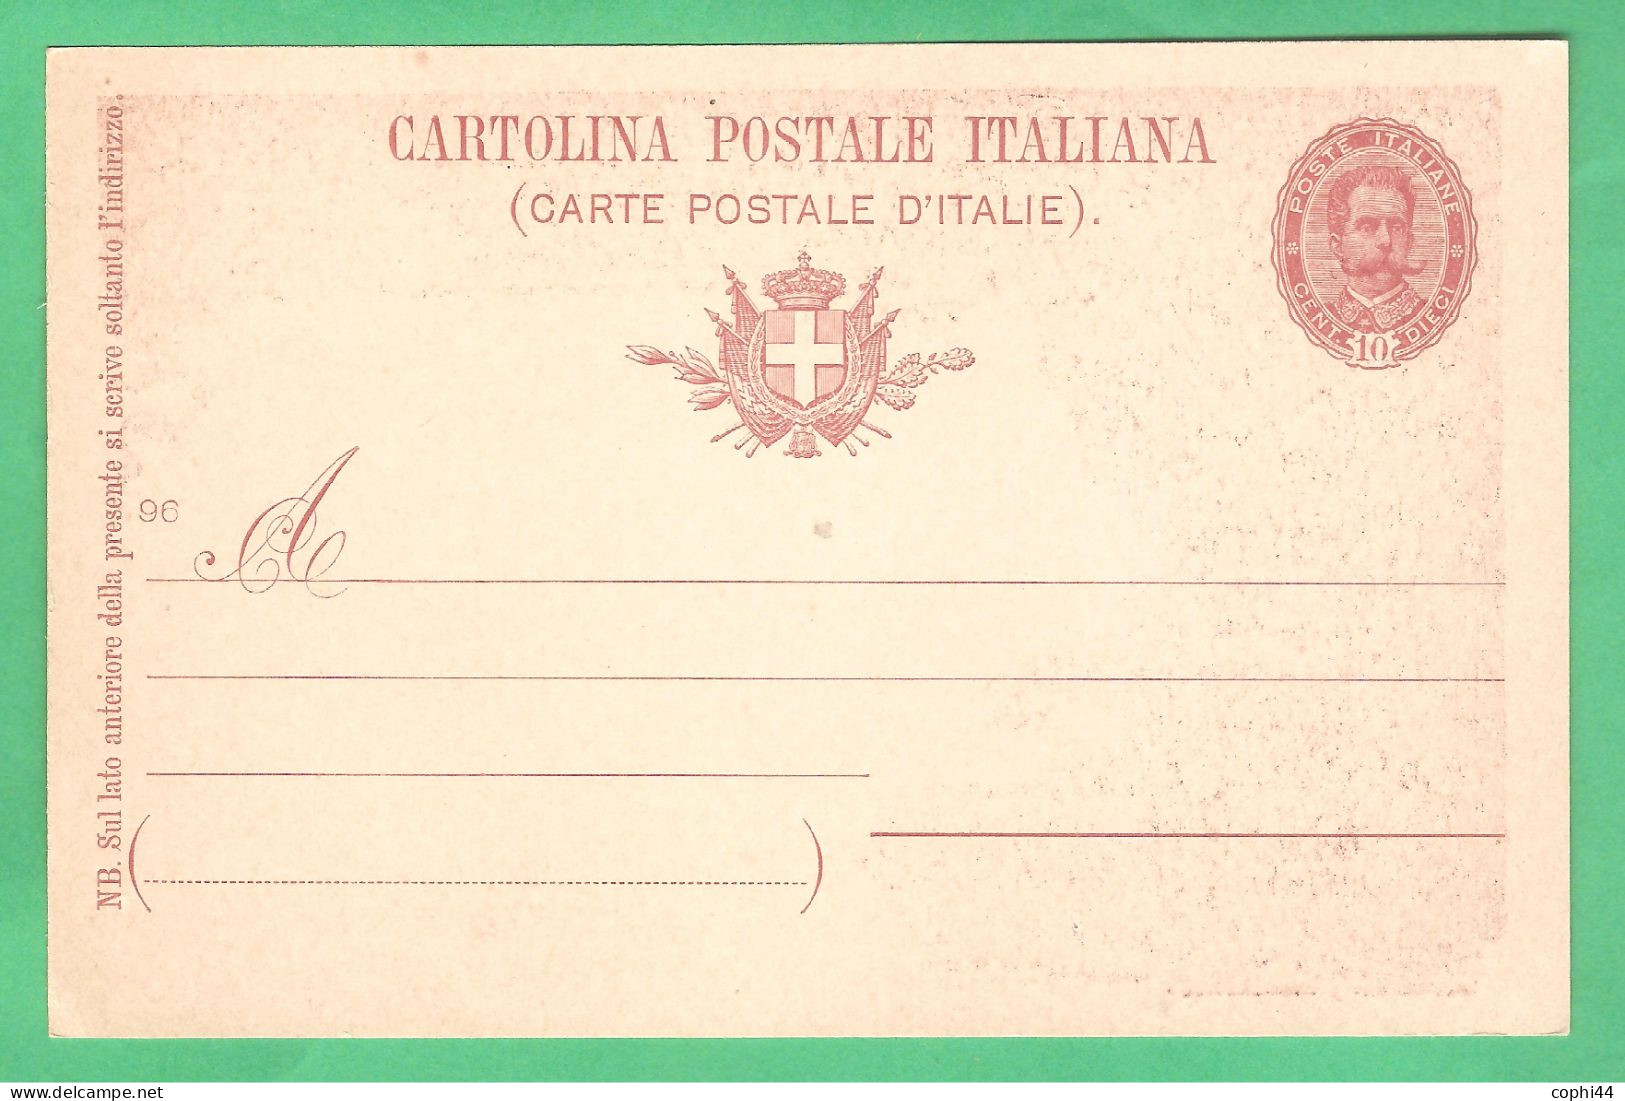 REGNO D'ITALIA 1896 CARTOLINA POSTALE NOZZE REALI MIL. 96 10 C Rosso-bruno (FILAGRANO C29-4) NUOVA - Entiers Postaux